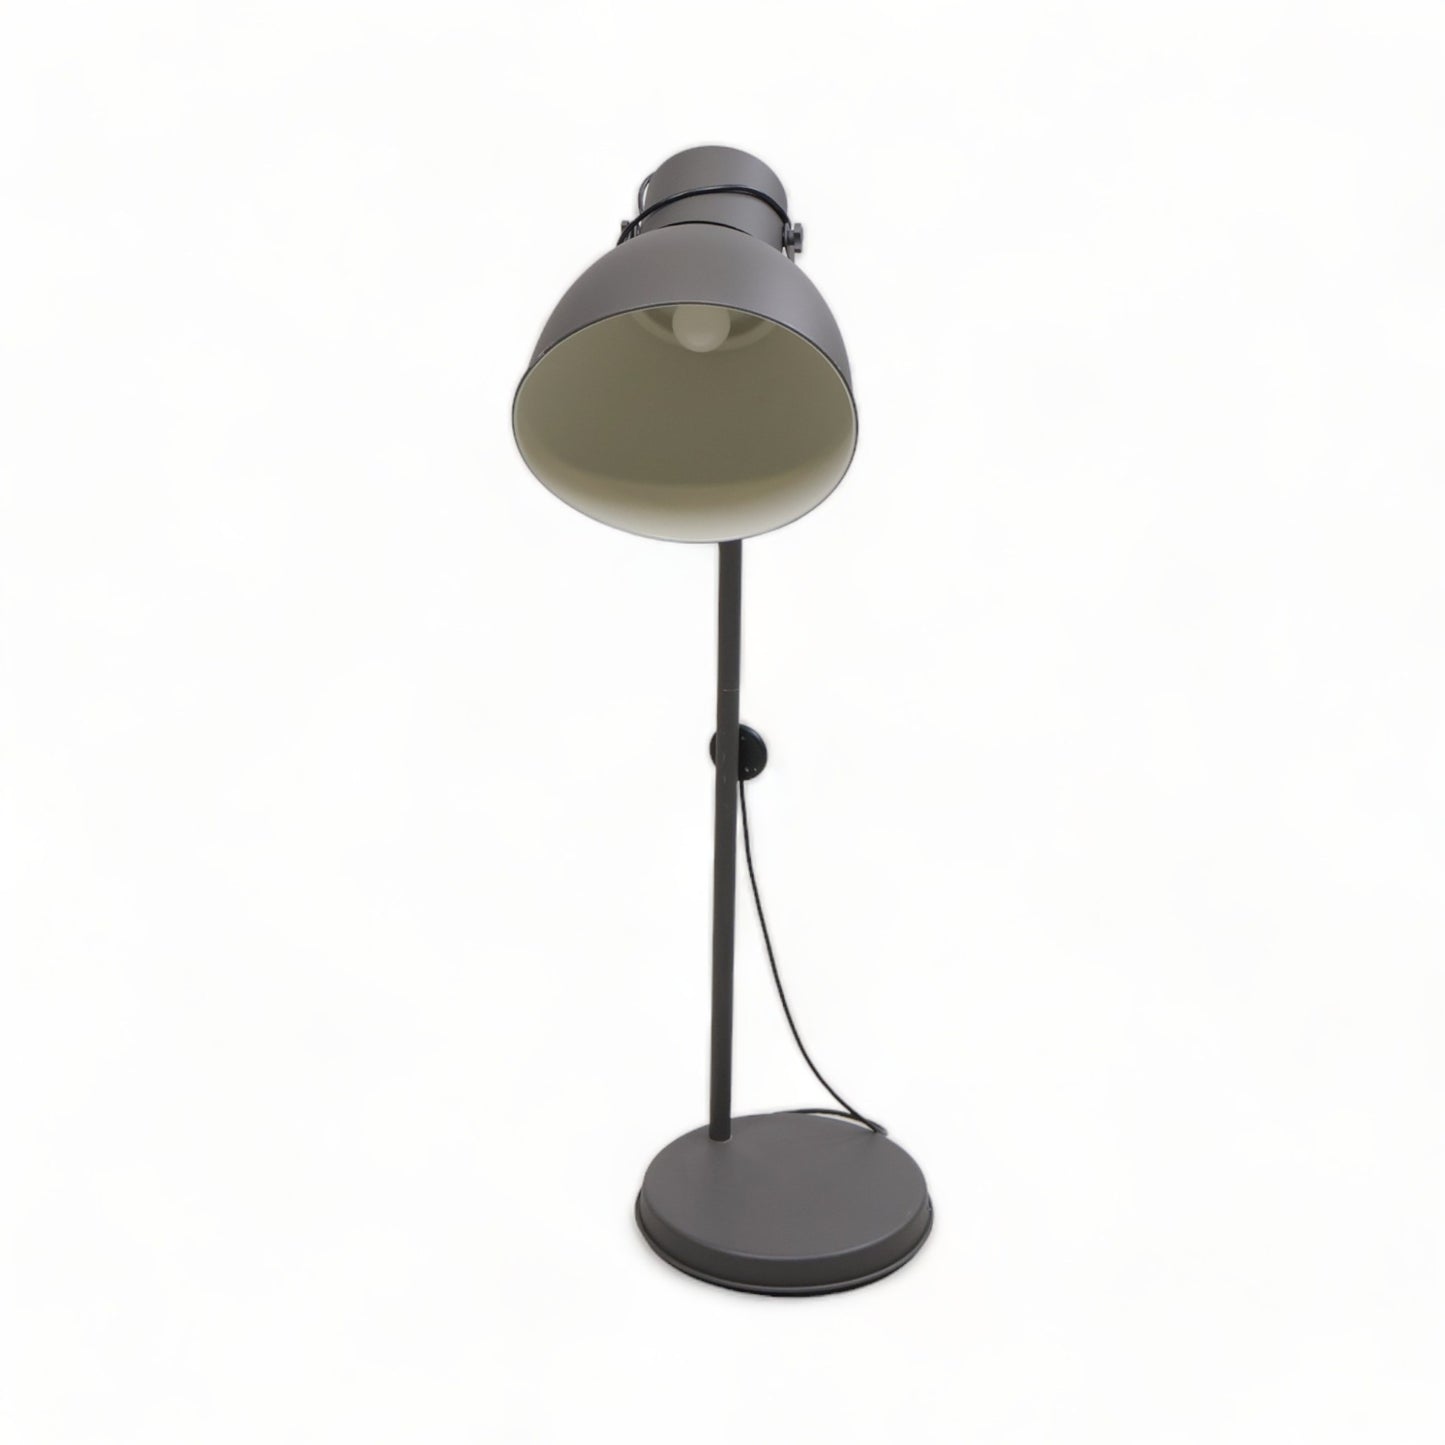 Kvalitetssikret | Robust og solid lampe i fargen grå